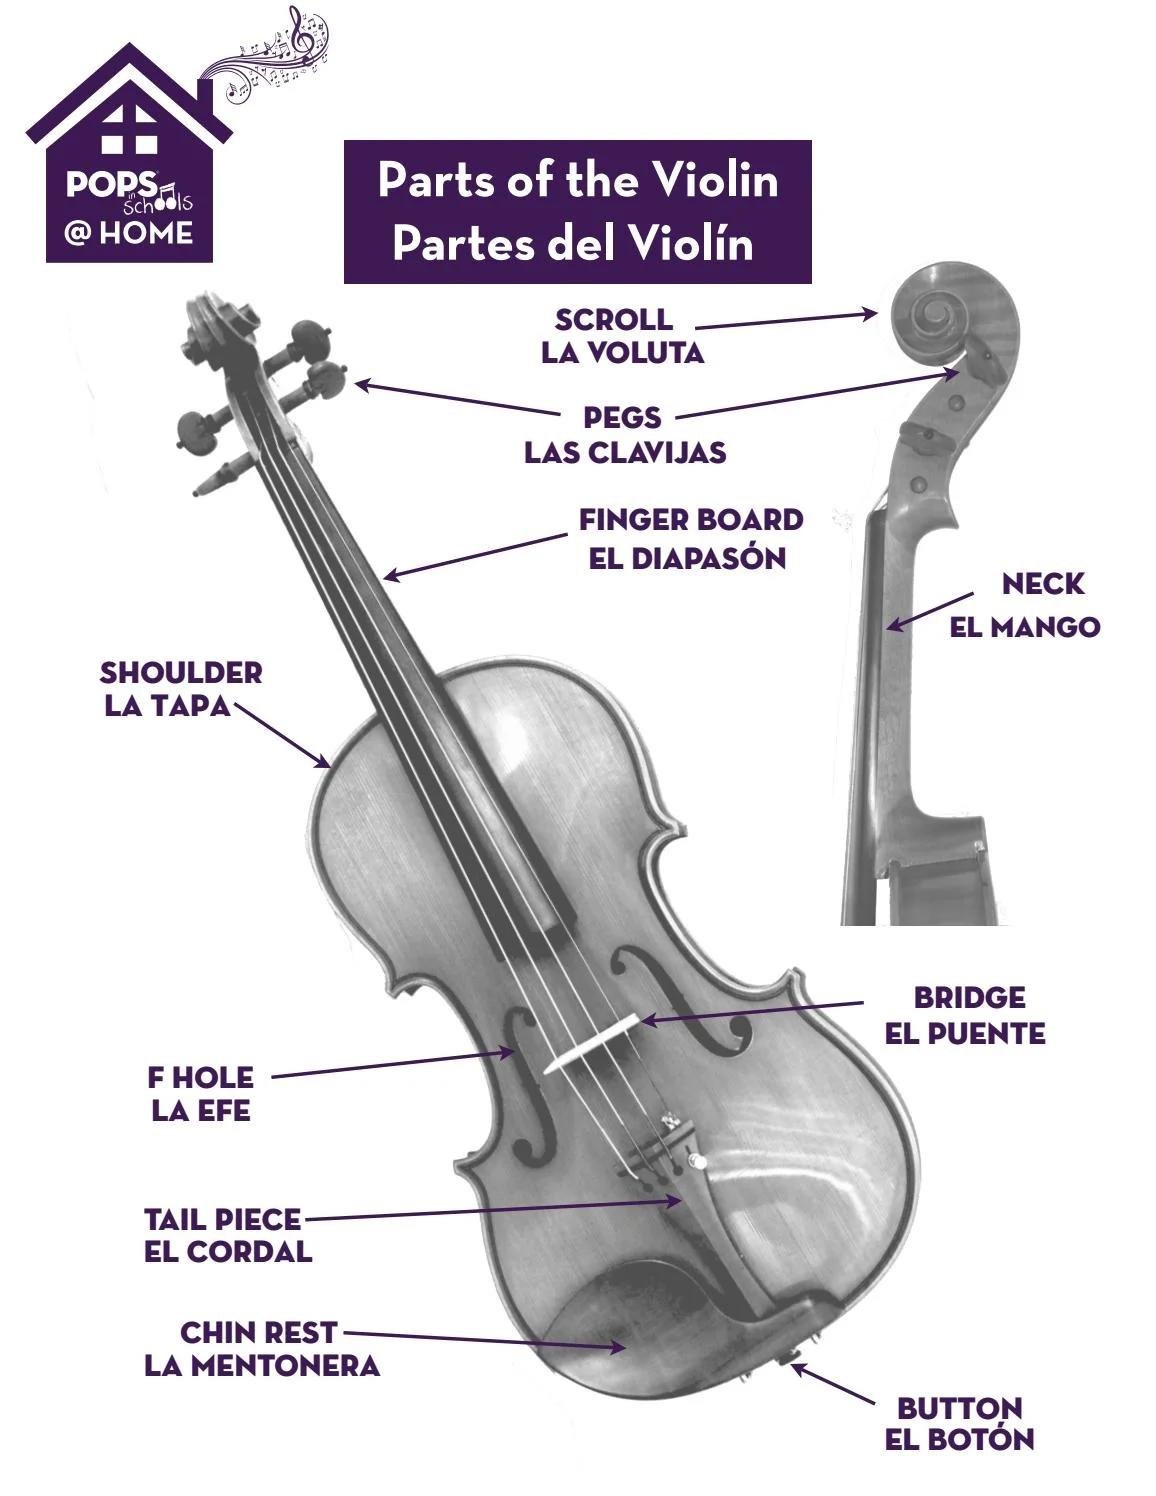 molde de violin partes la voluta - Cómo se llama la parte rizada en la parte superior de un violín